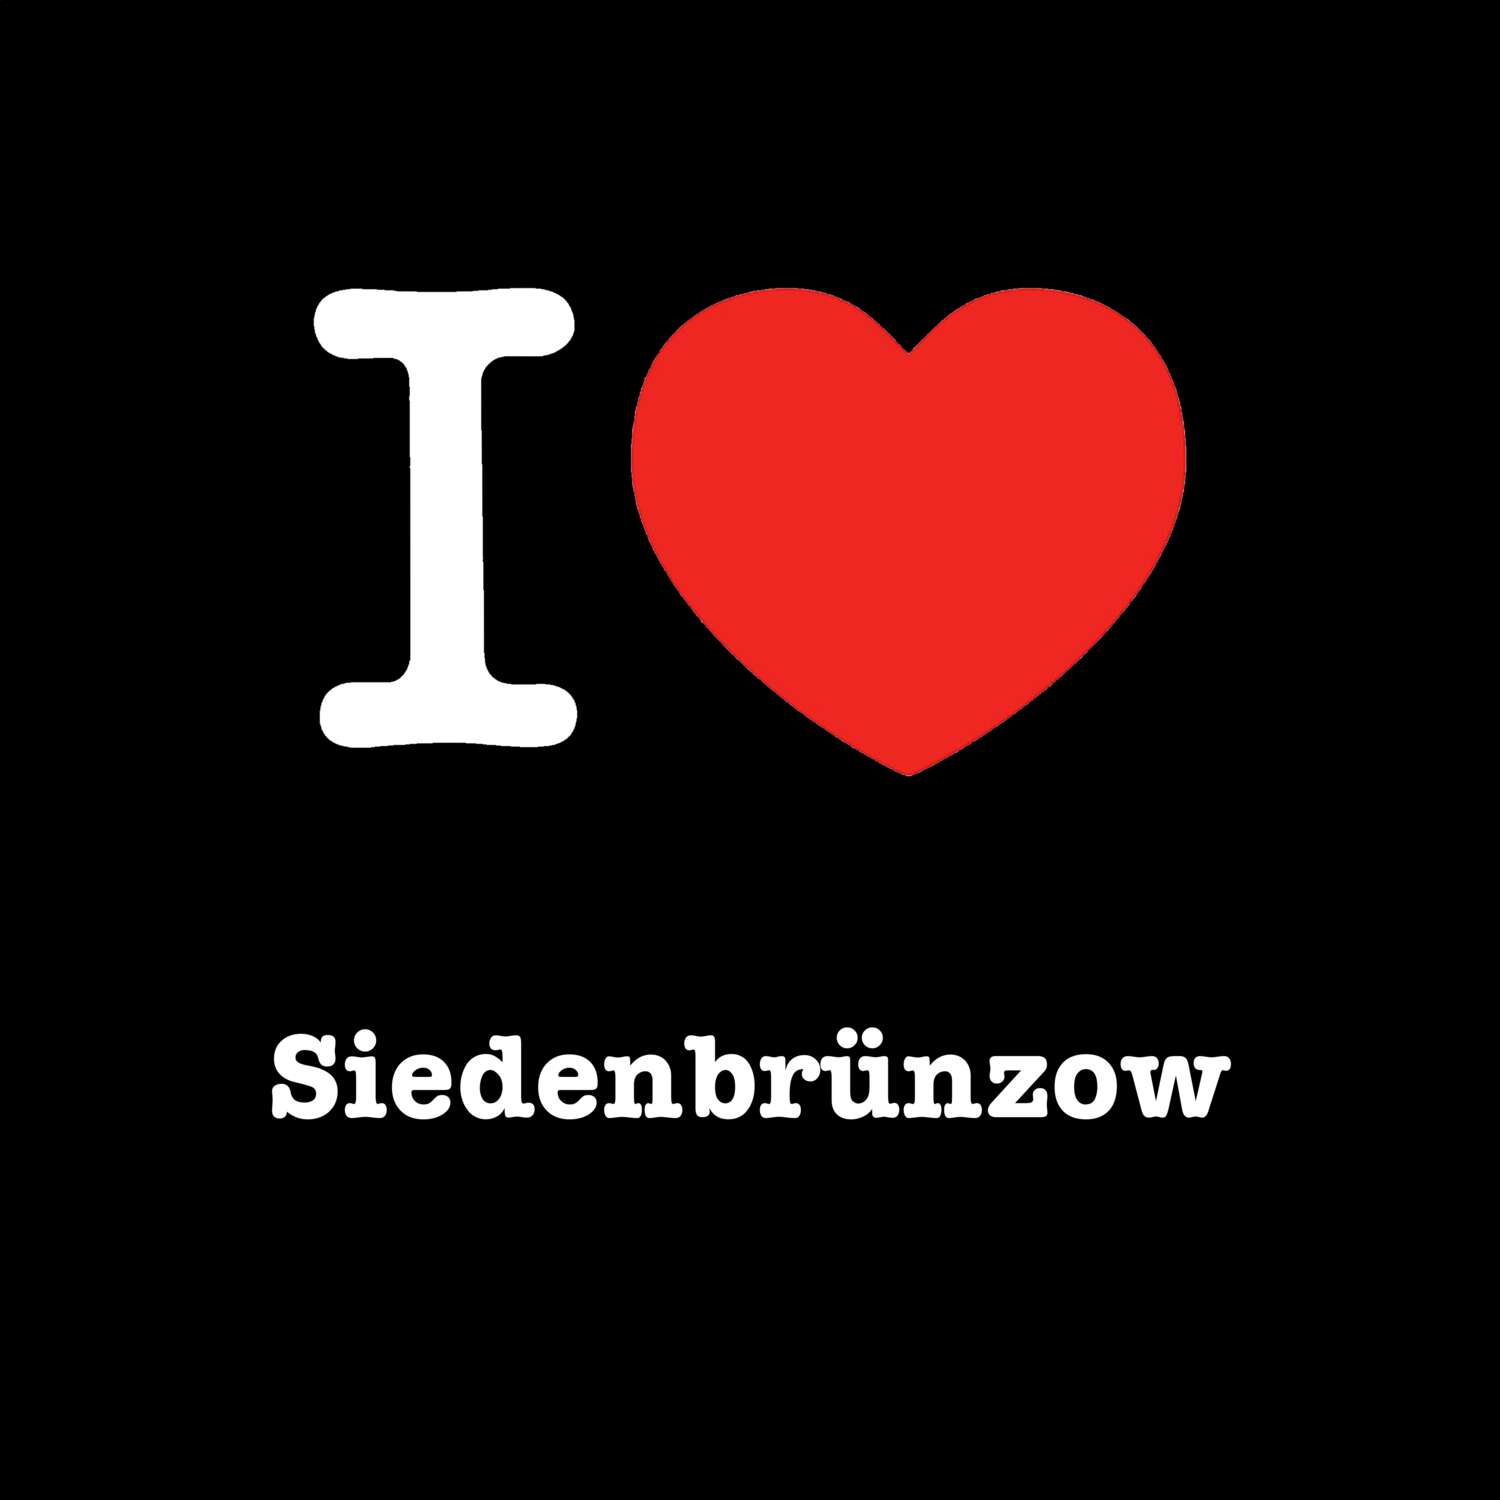 Siedenbrünzow T-Shirt »I love«